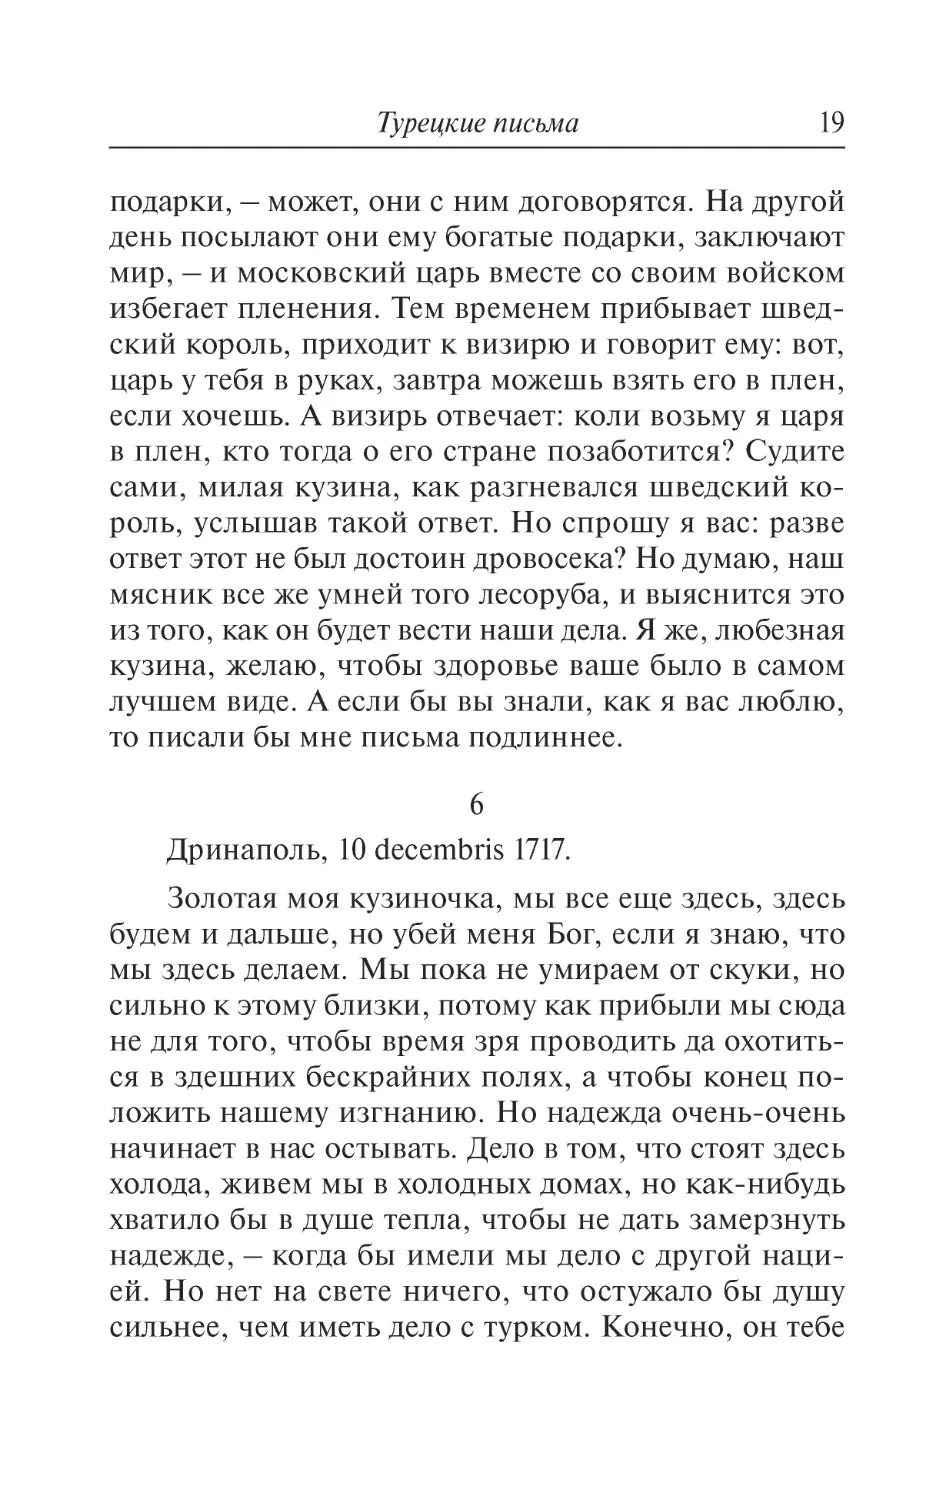 6. Дринаполь, 10 decembris 1717